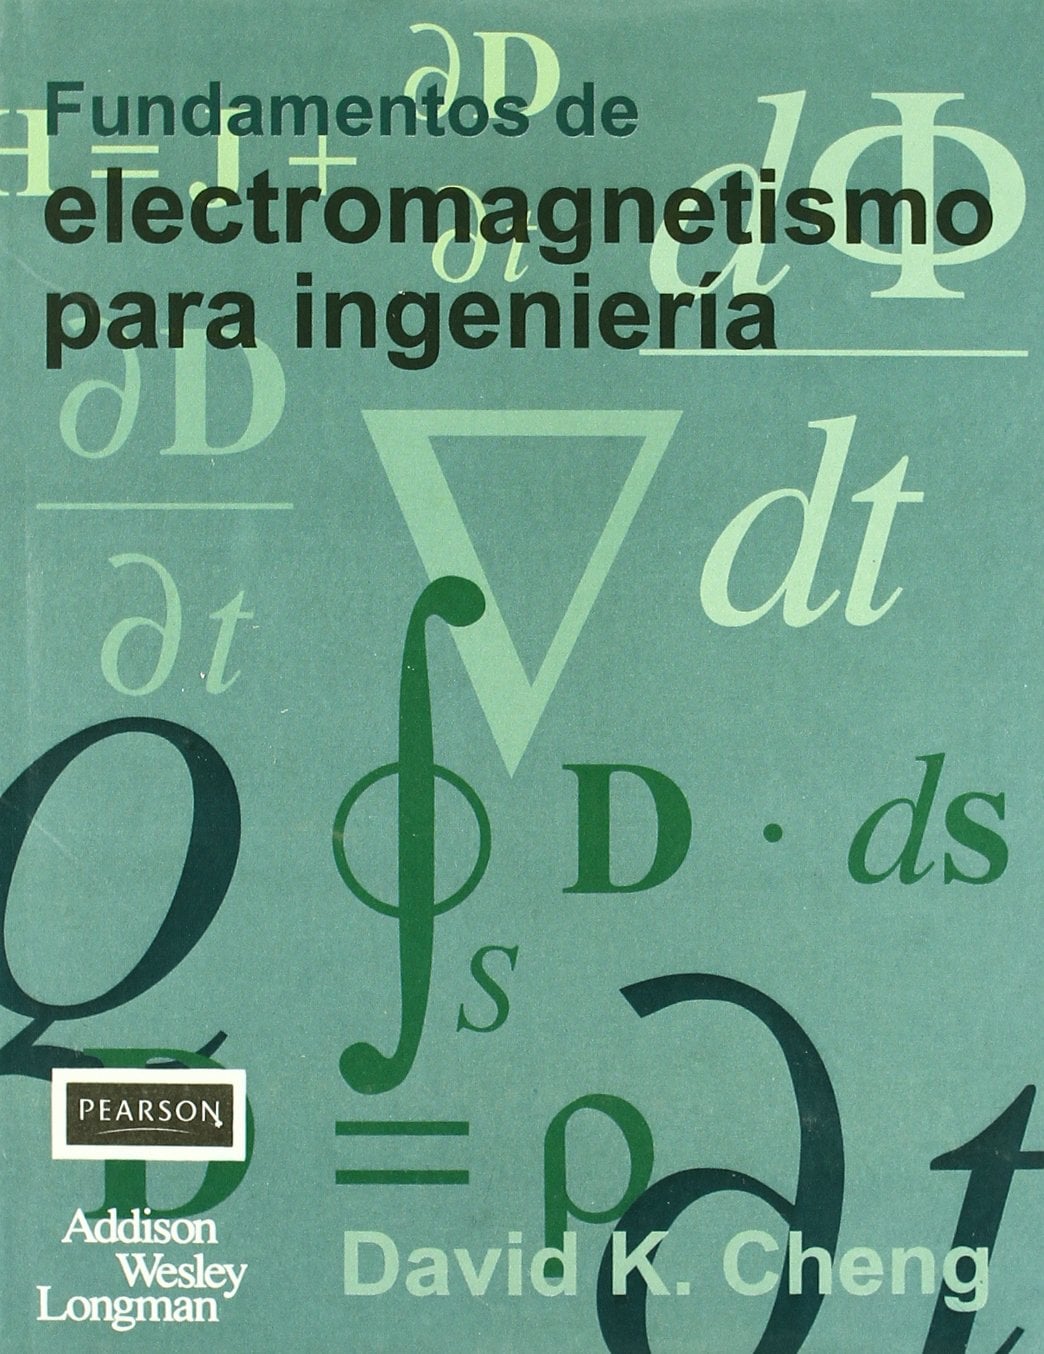 Fundamentos de Electromagnetismo para Ingeniería 1 Edición David K. Cheng PDF